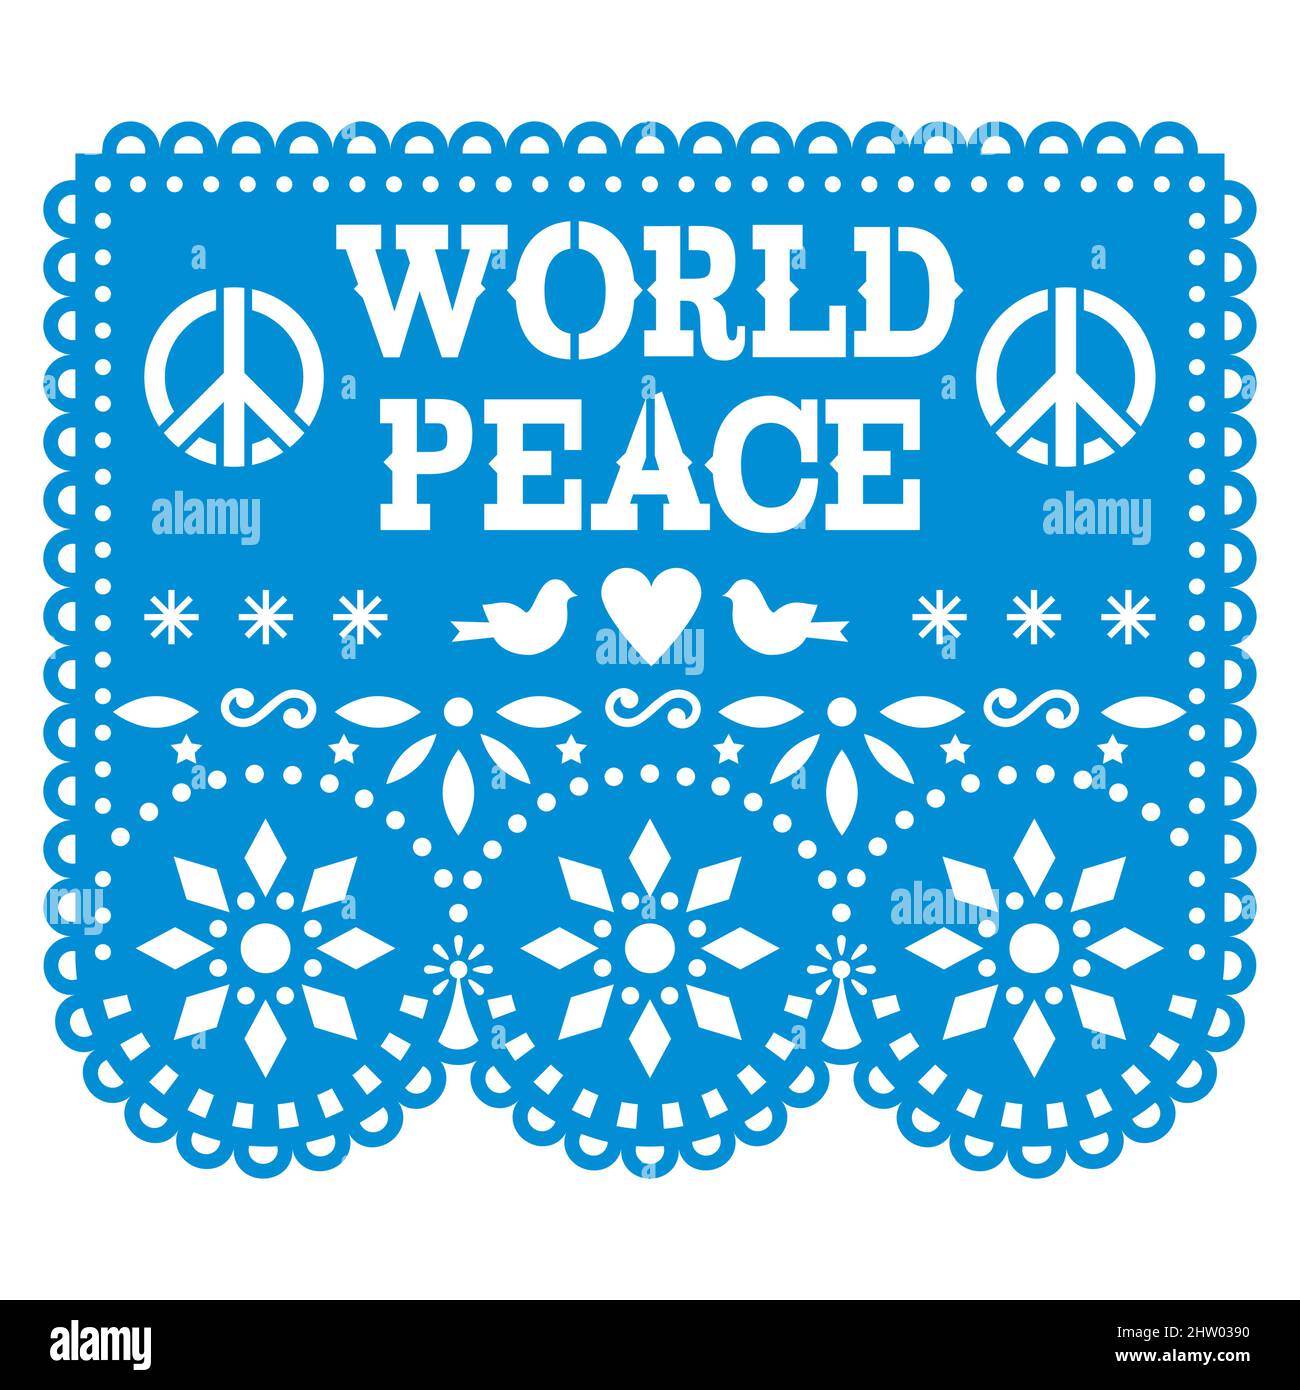 World Peace Papel Picado Vektor-Design in blau, mexikanisches Papier Ausschnitt Dekoration - nicht-Vereinbarung, nicht-Verletzung, keine Kriegsbotschaft mehr Stock Vektor